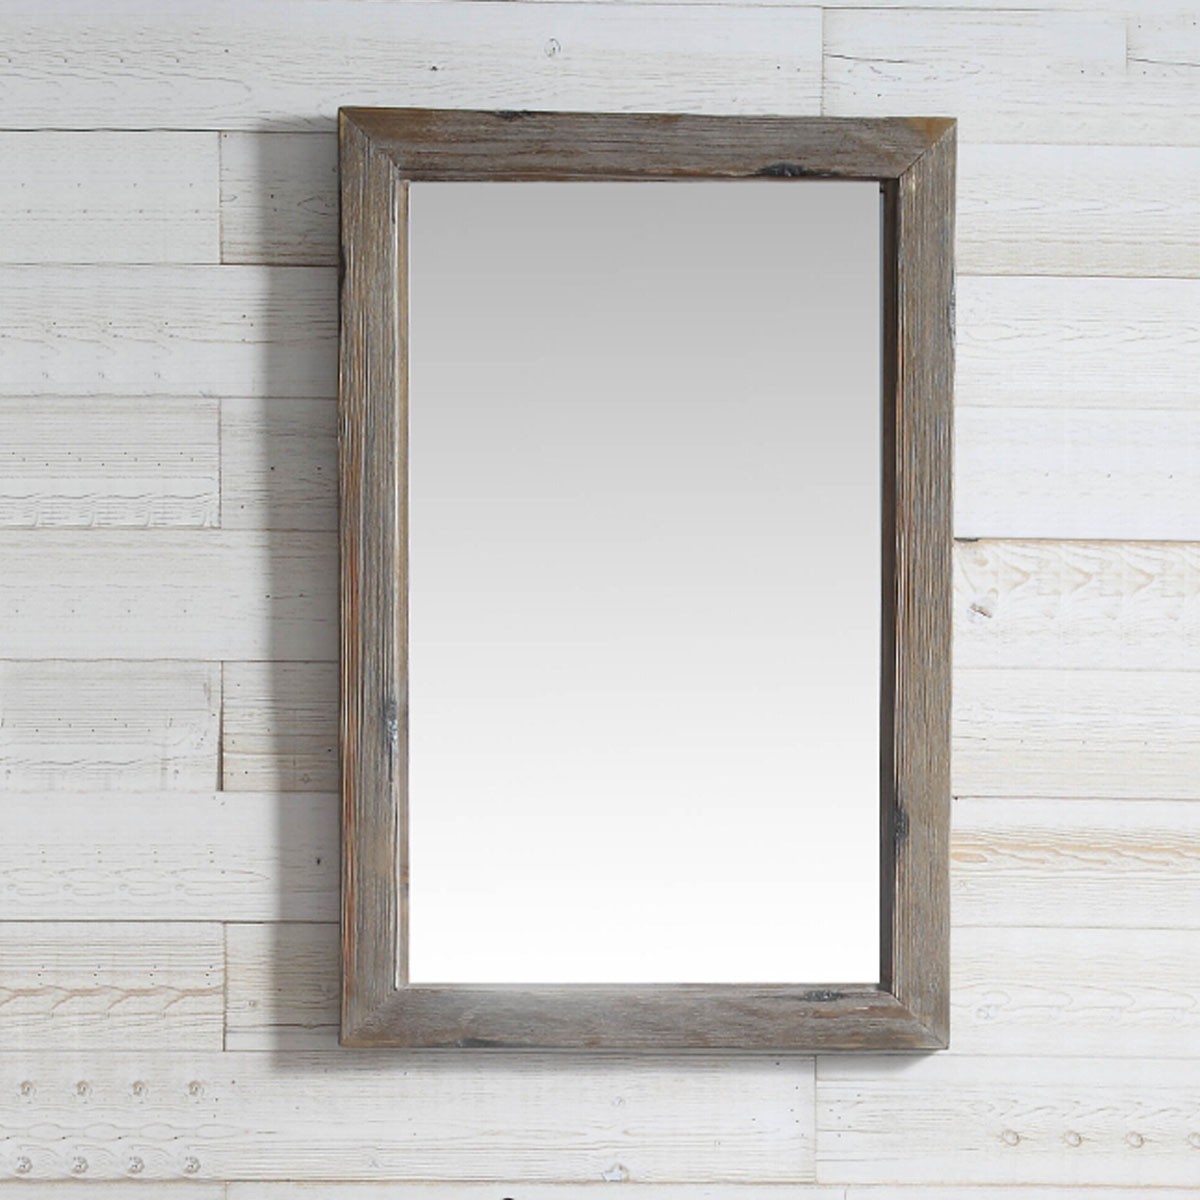 24 x 36 po Miroir pour Vanité avec Cadre en Bois de Sapin (DK-WH9324-LB)